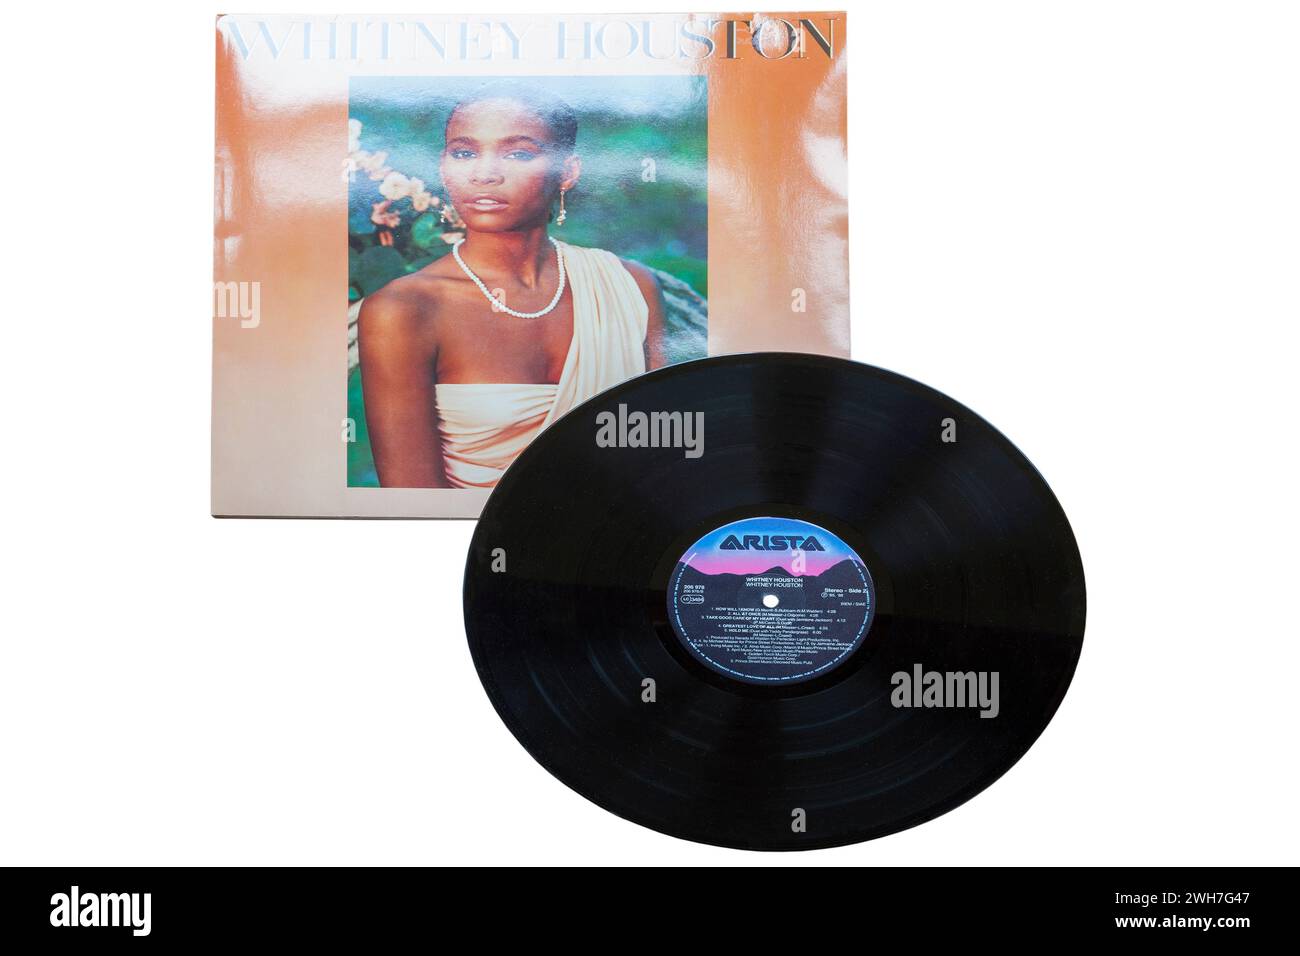 Whitney Houston Vinyl-Album-Cover isoliert auf weißem Hintergrund - 1985 Stockfoto